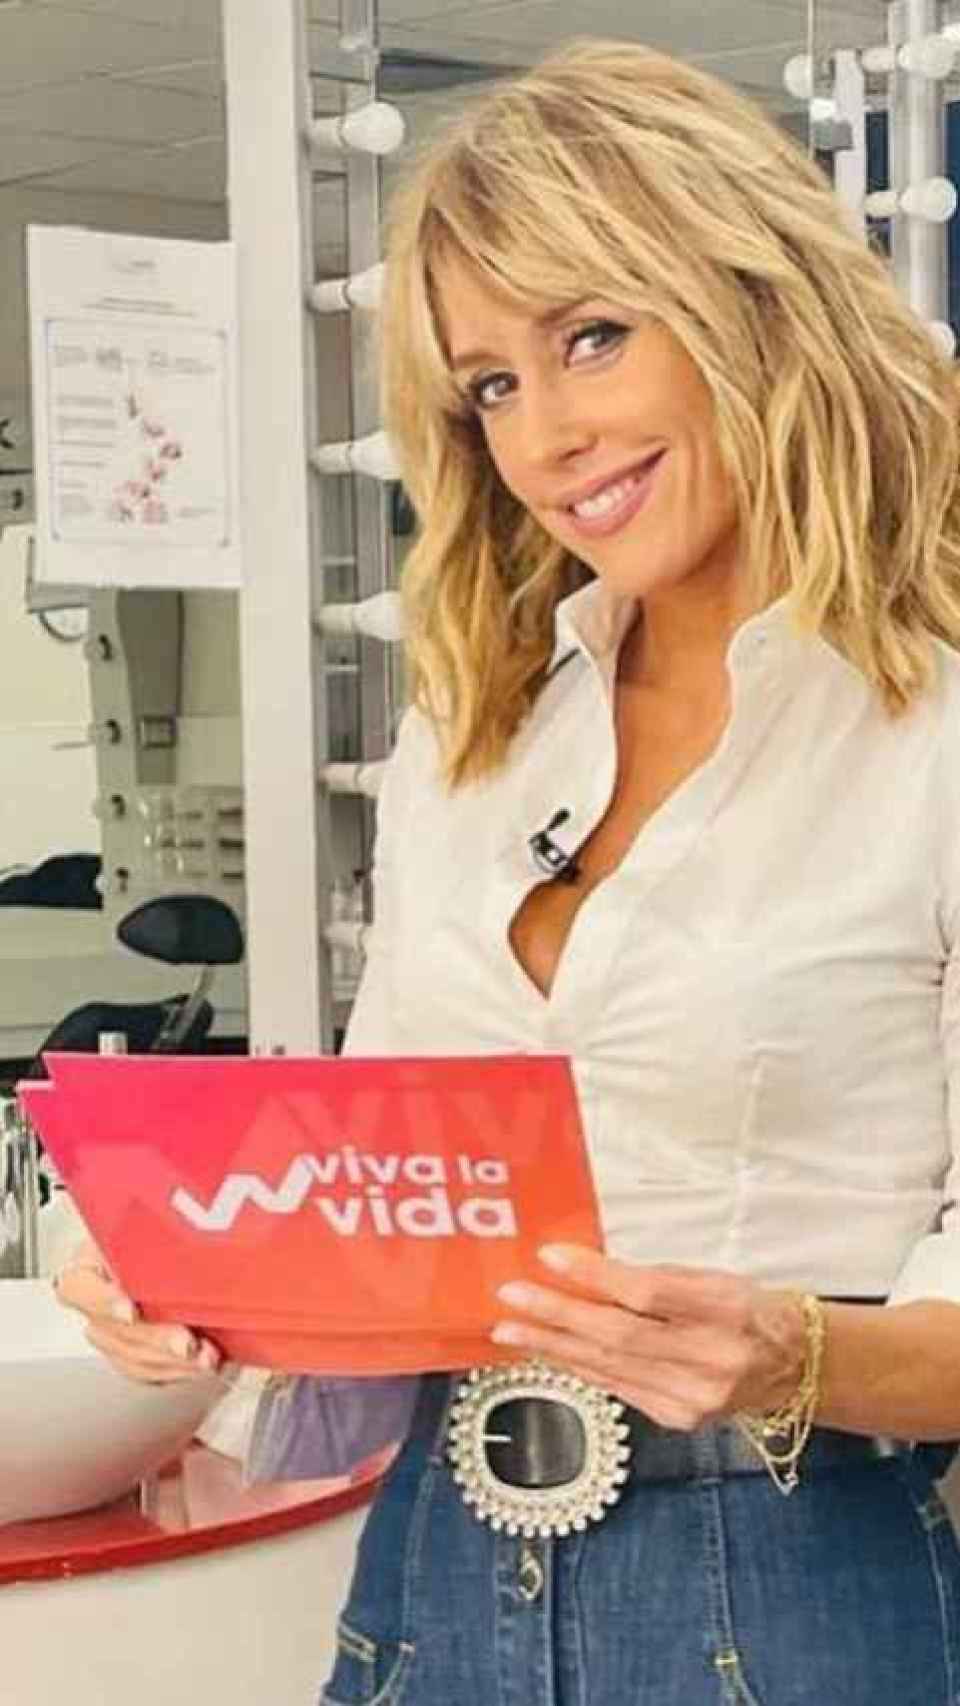 Emma García en una imagen compartida en redes sociales, previo a 'Viva la vida'.